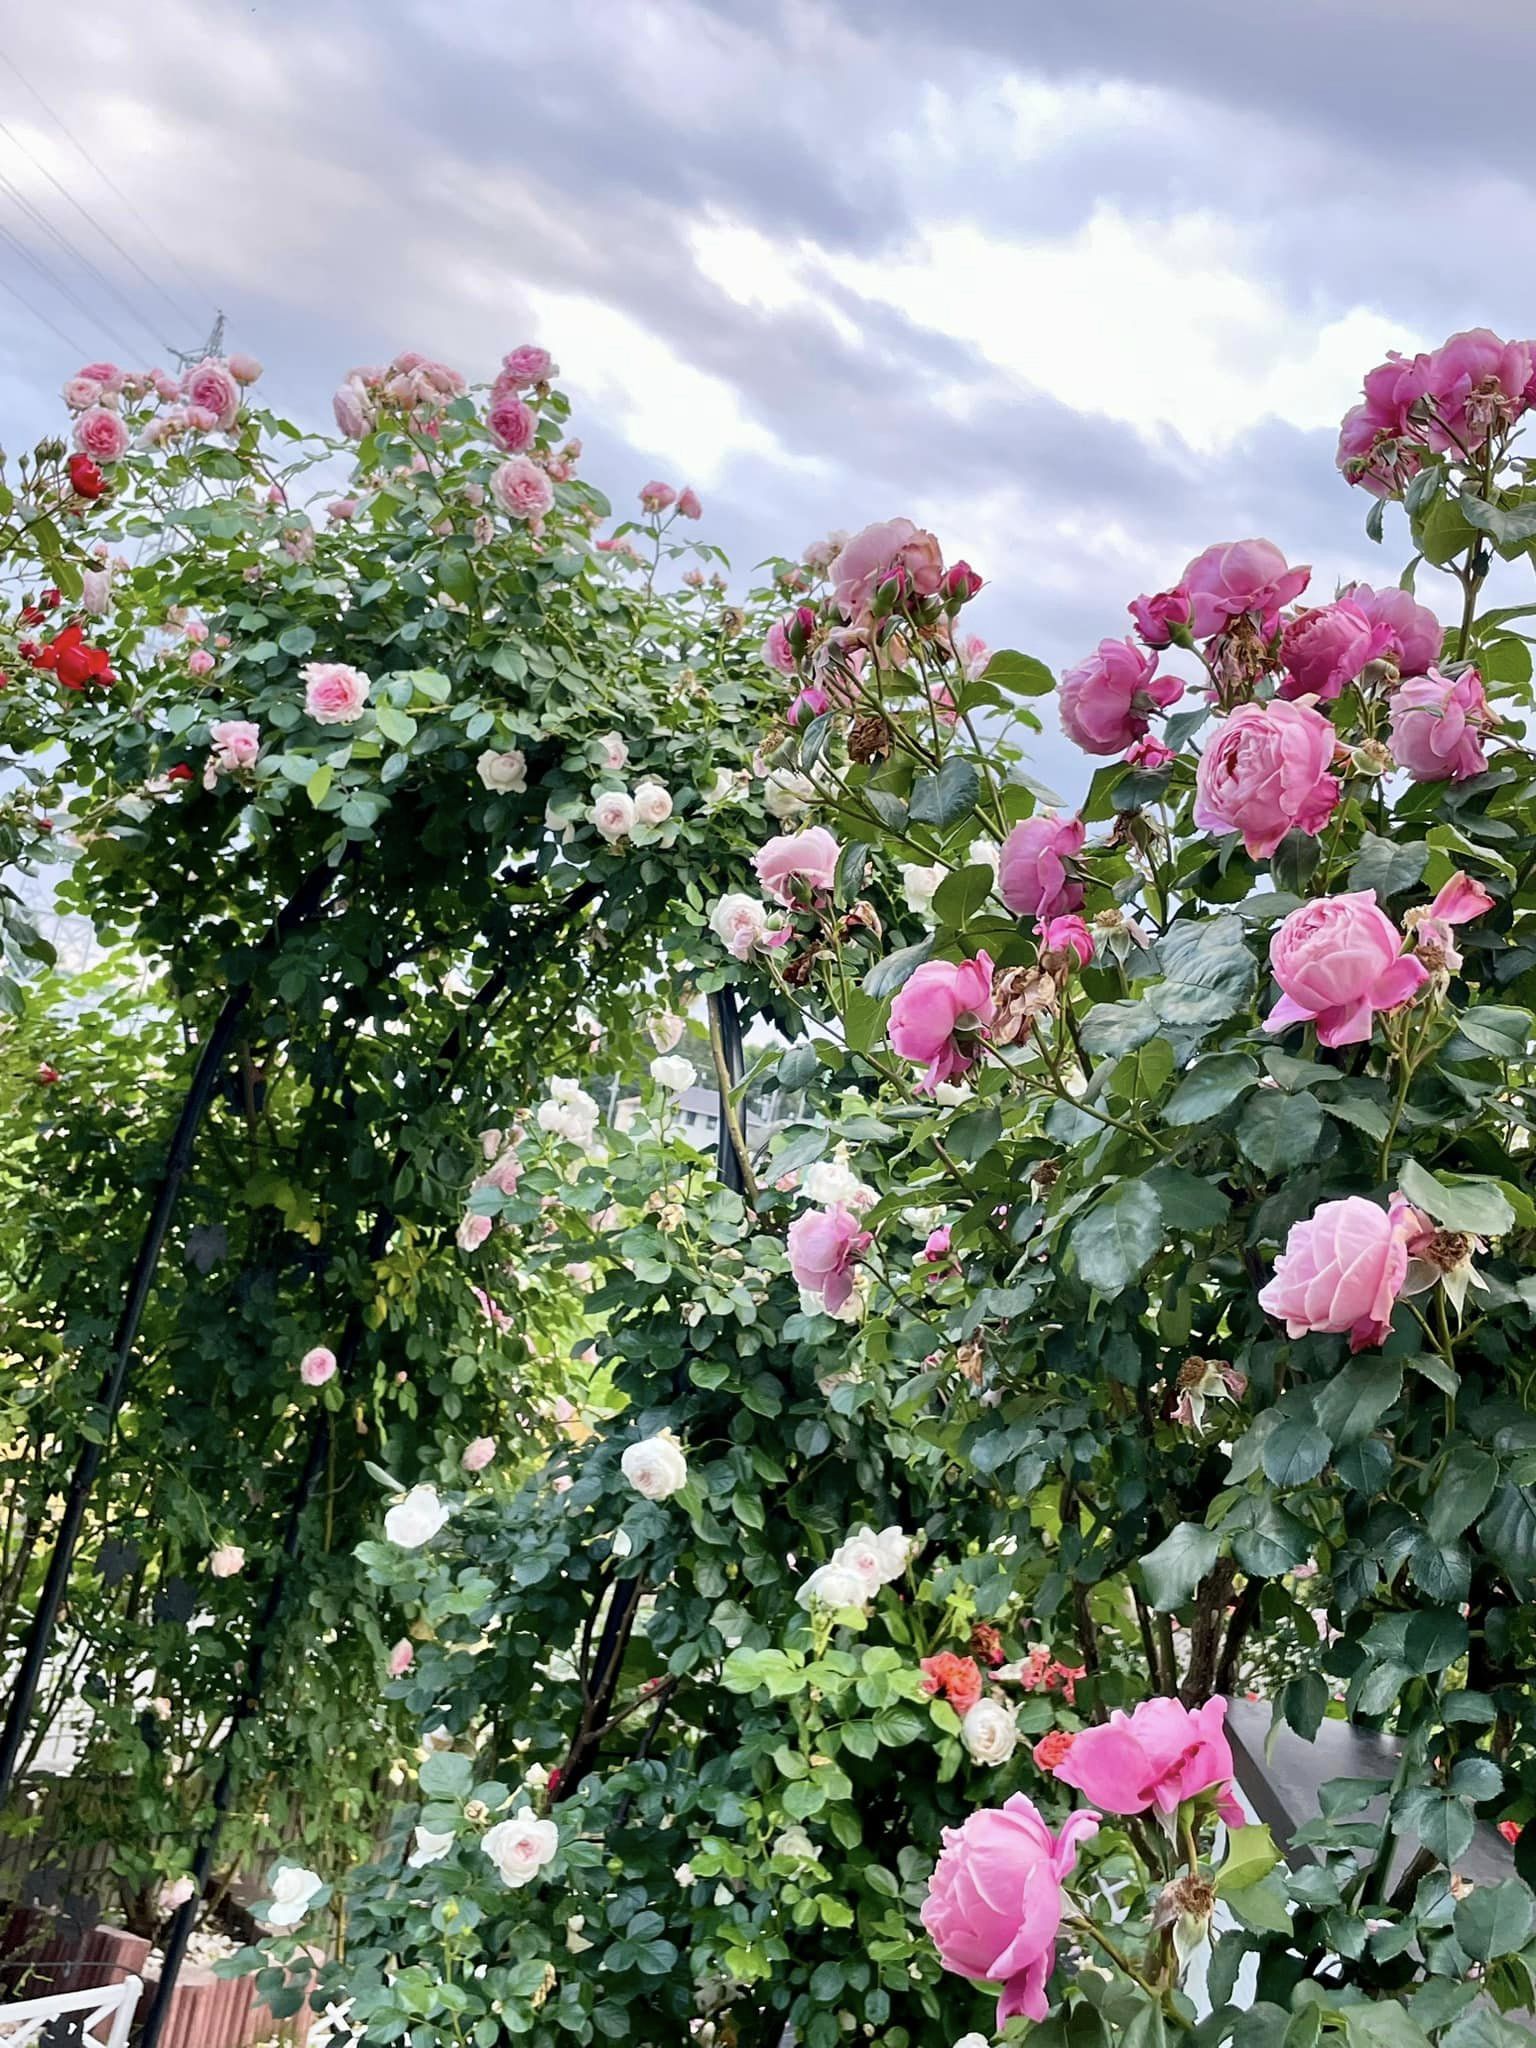 Ngôi nhà lúc nào cũng thơm nức mùi hoa vì có vườn hồng hơn 80 loại của mẹ Việt ở Nhật- Ảnh 12.